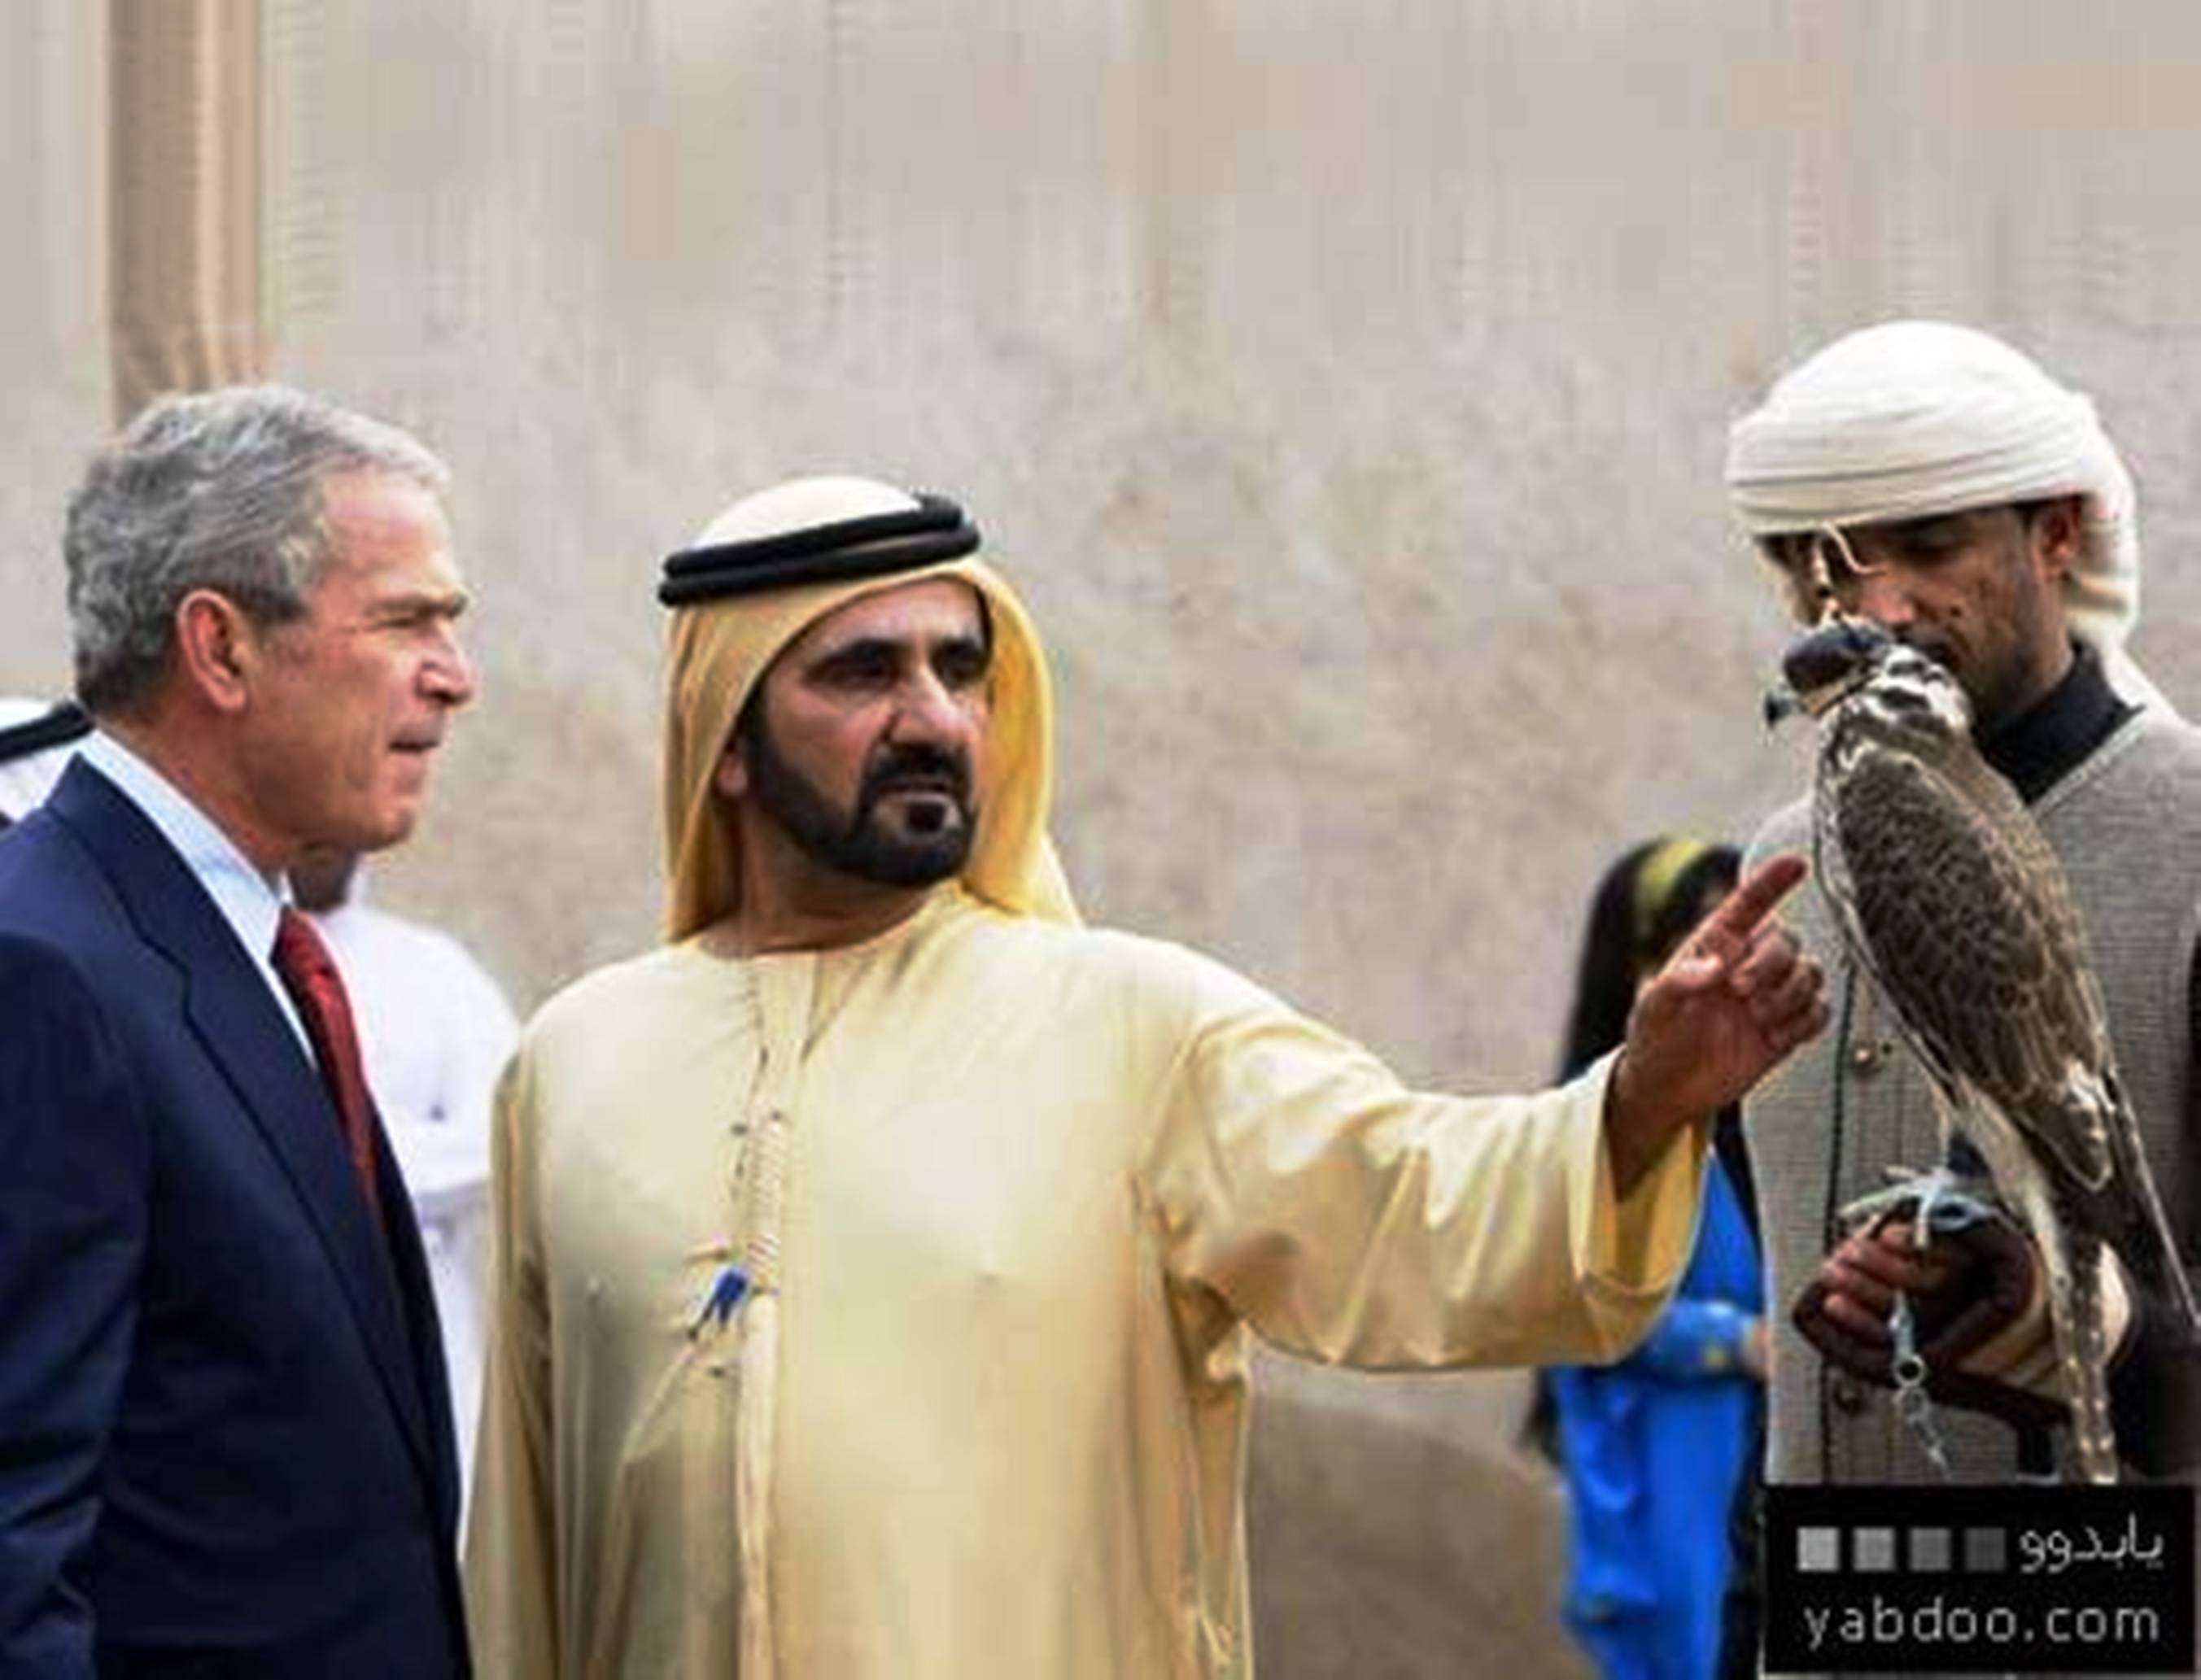 جواب میں عرب شہزادہ قیمتی عقاب کا تحفہ دے رہا ہے